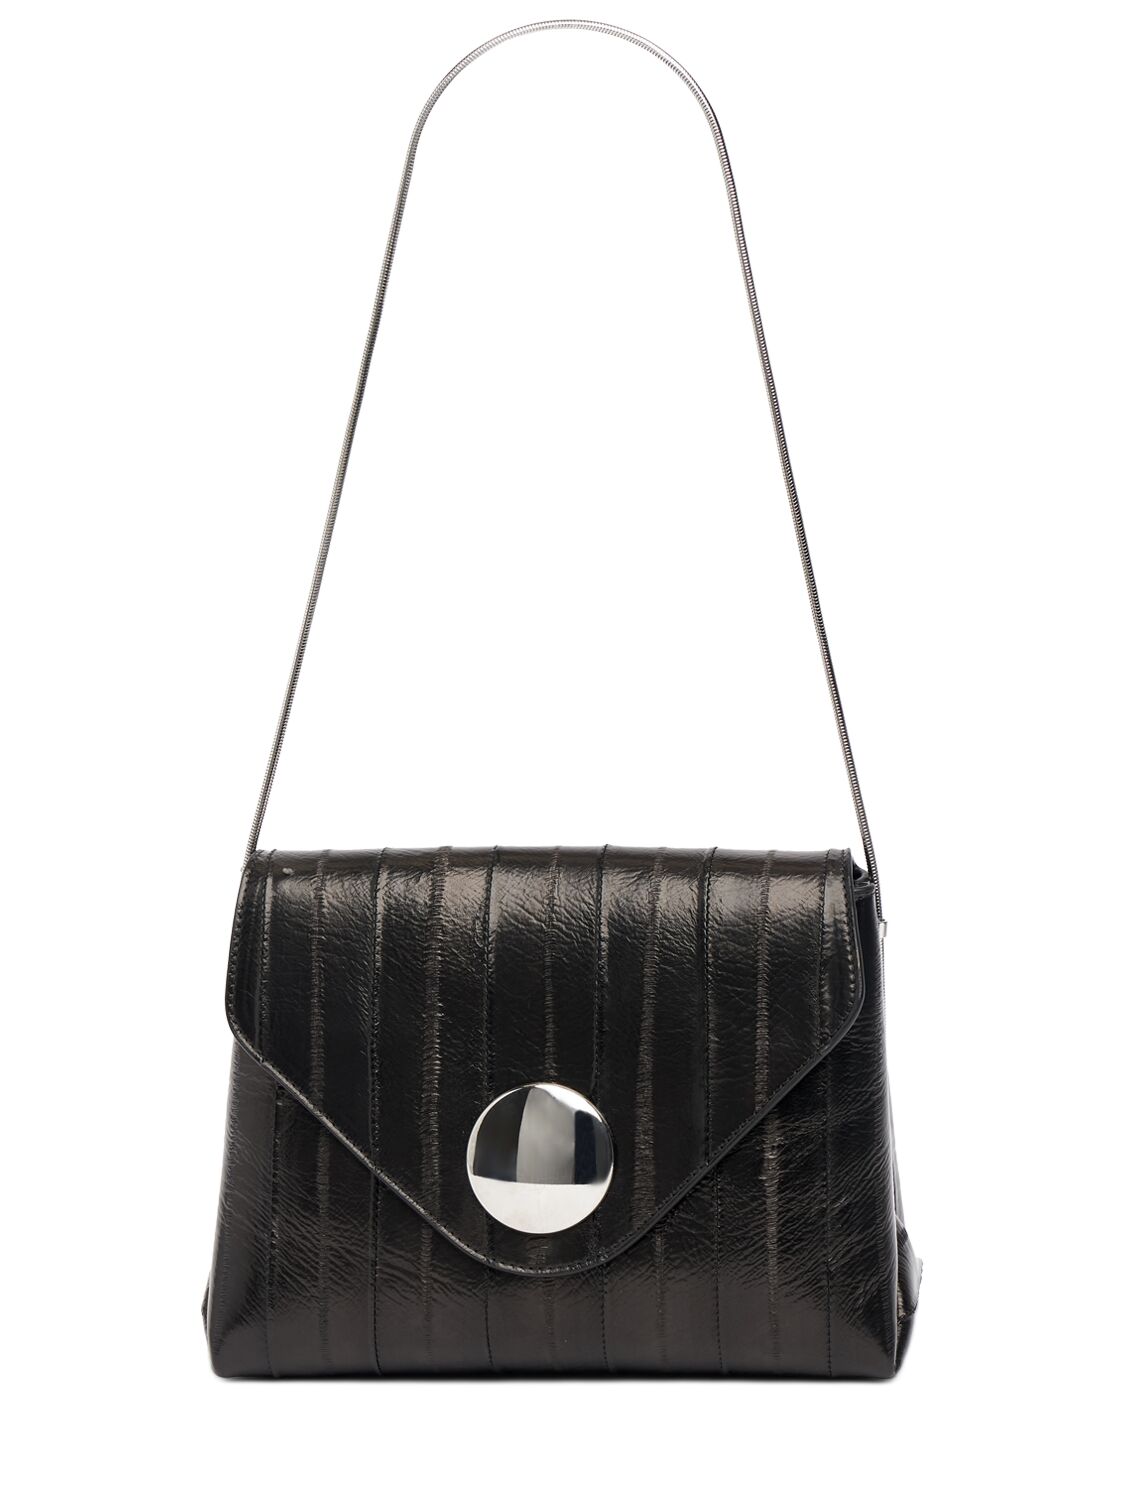 Khaite Bobbi Leather Shoulder Bag In Black